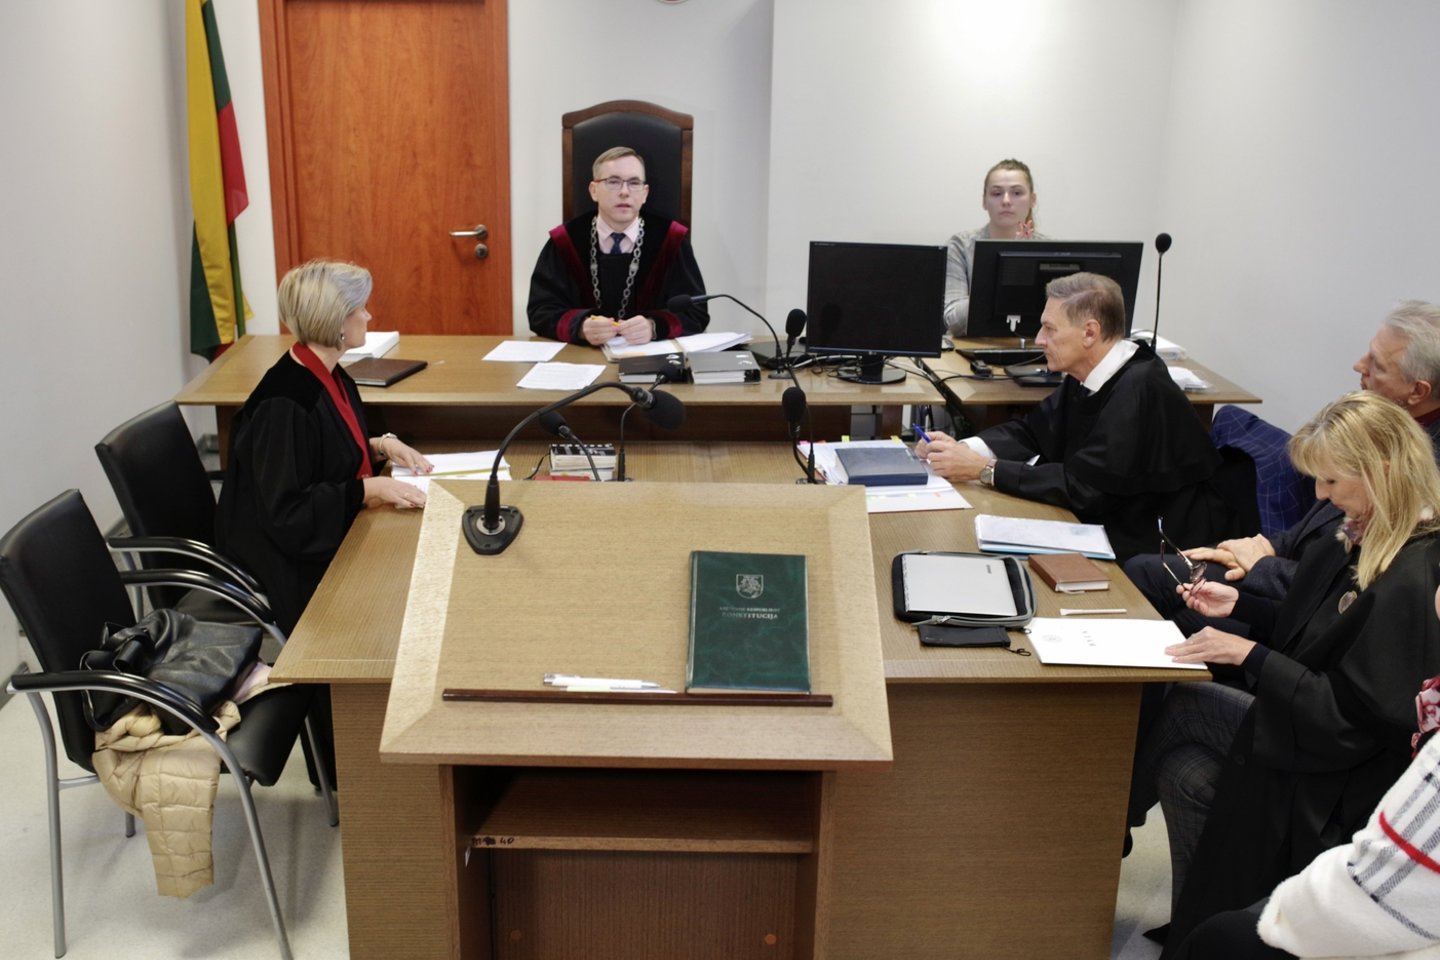  K.Strupui iškeltą bylą teismas nagrinėja neviešuose posėdžiuose.<br> V.Ščiavinsko nuotr. 